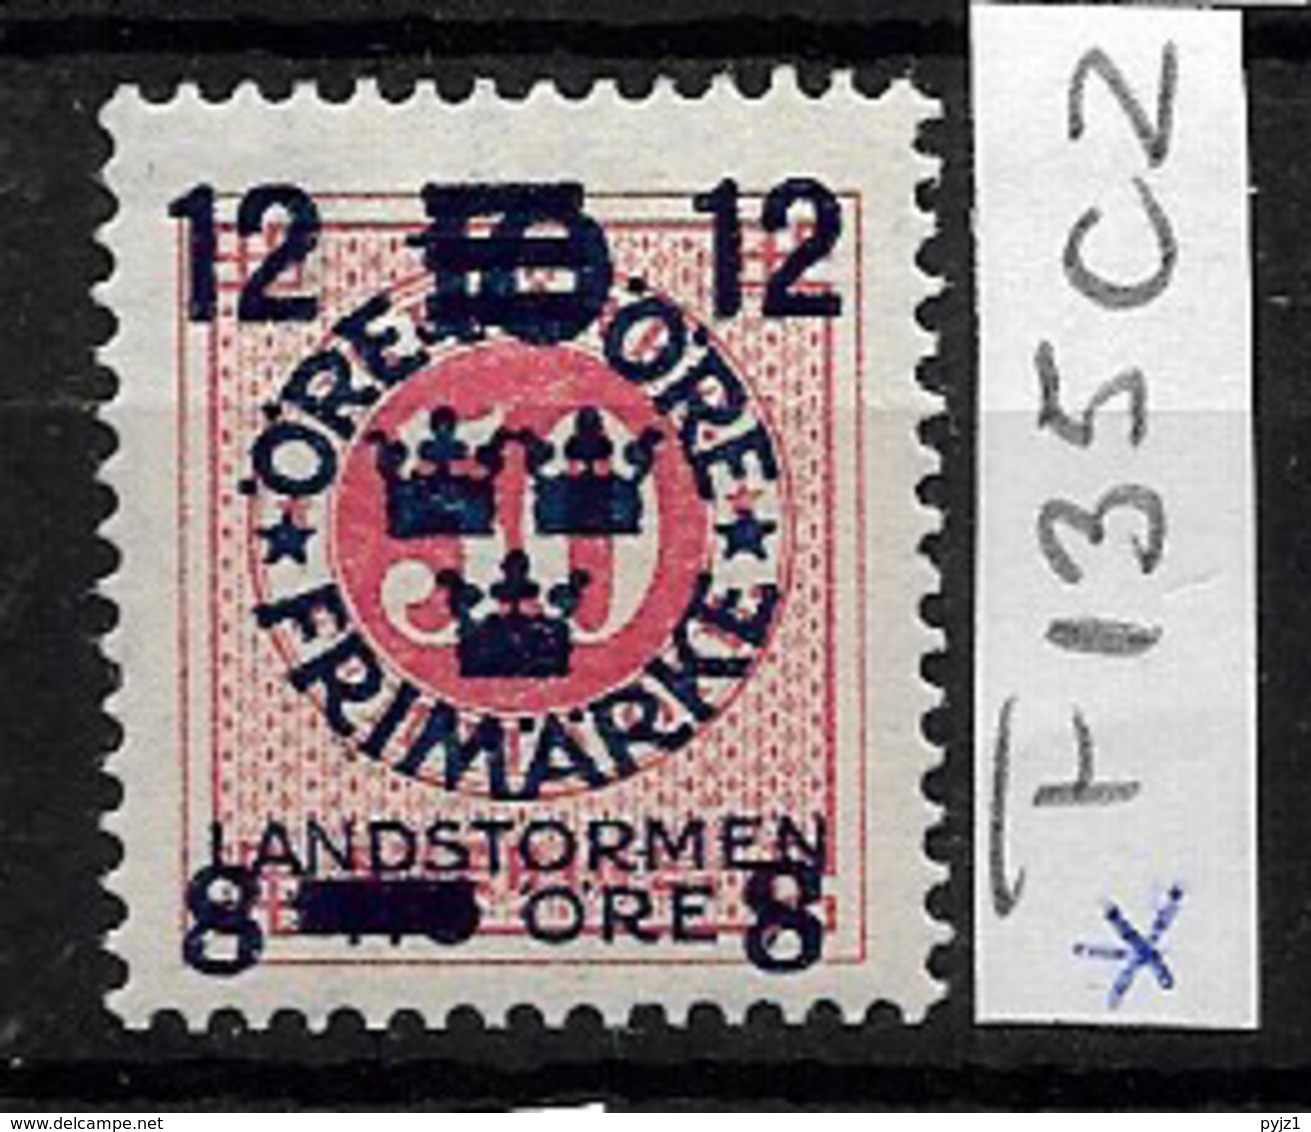 1918 MH Sweden, Landstrom III: Watermark KPV - Ongebruikt